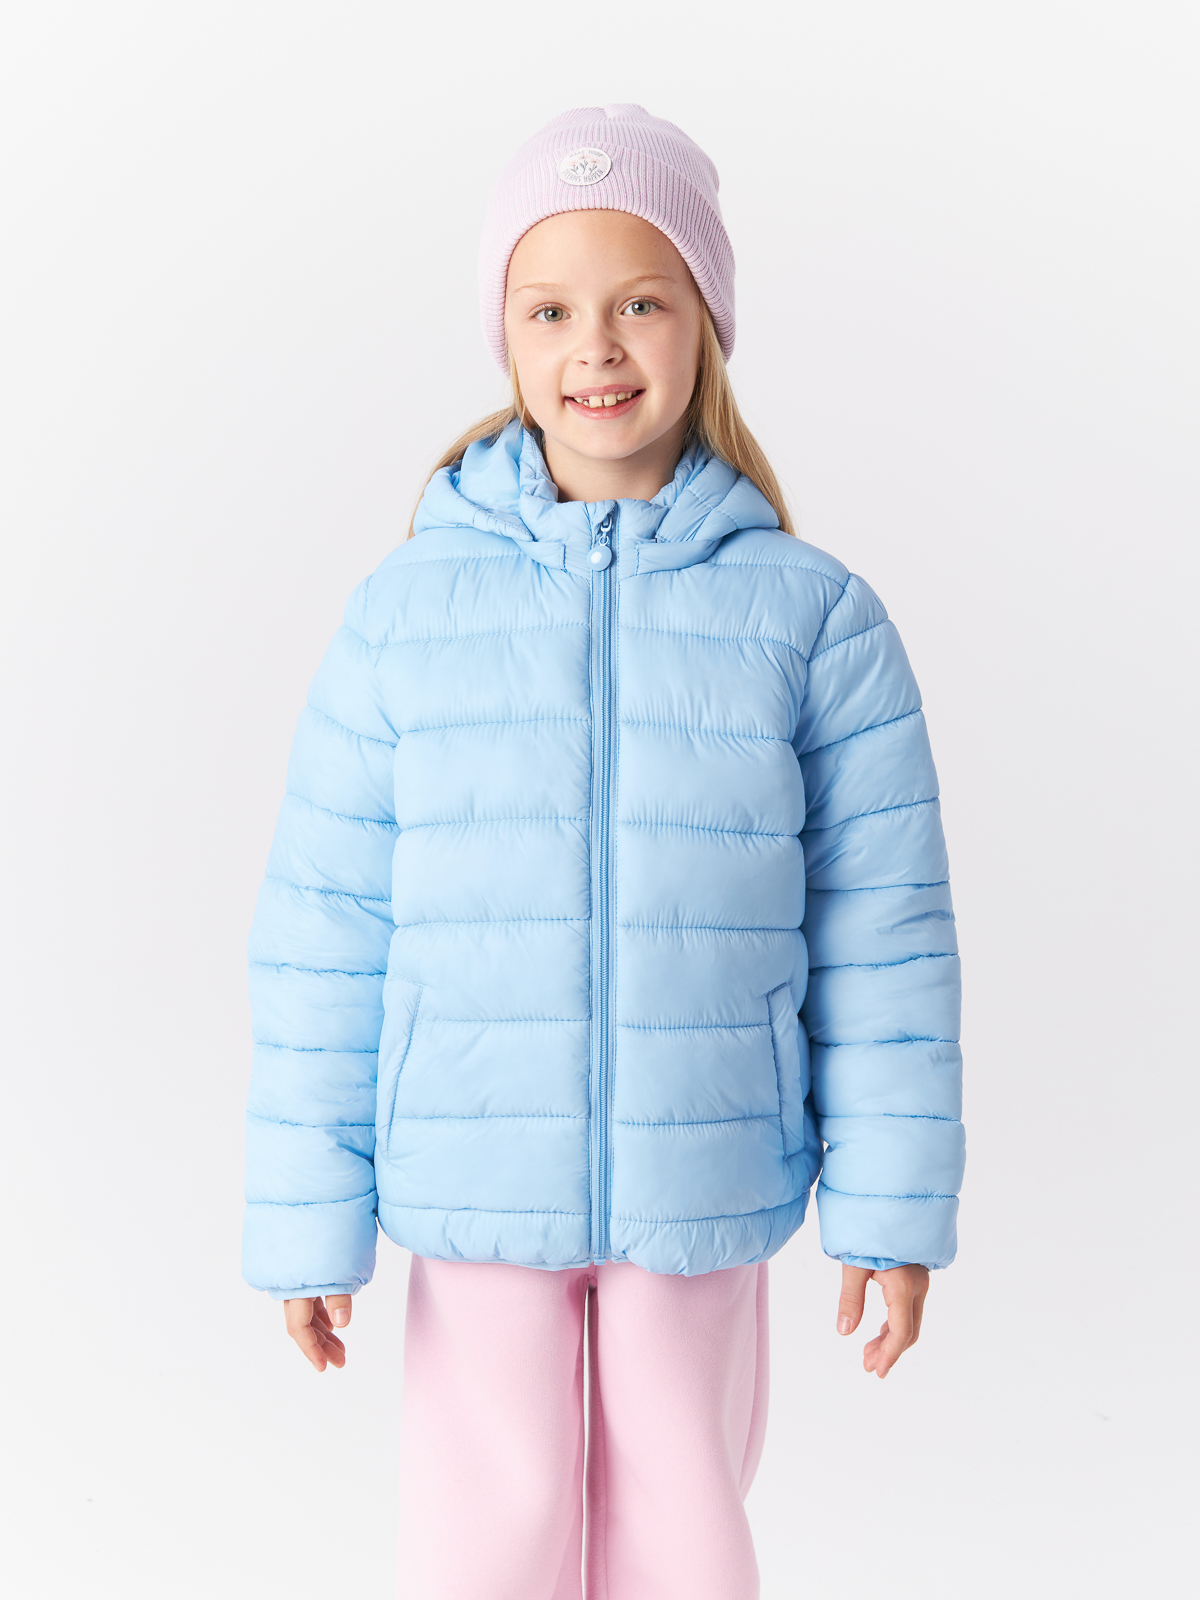 Куртка Mcstyles для девочки, размер 164, SMM14, голубая